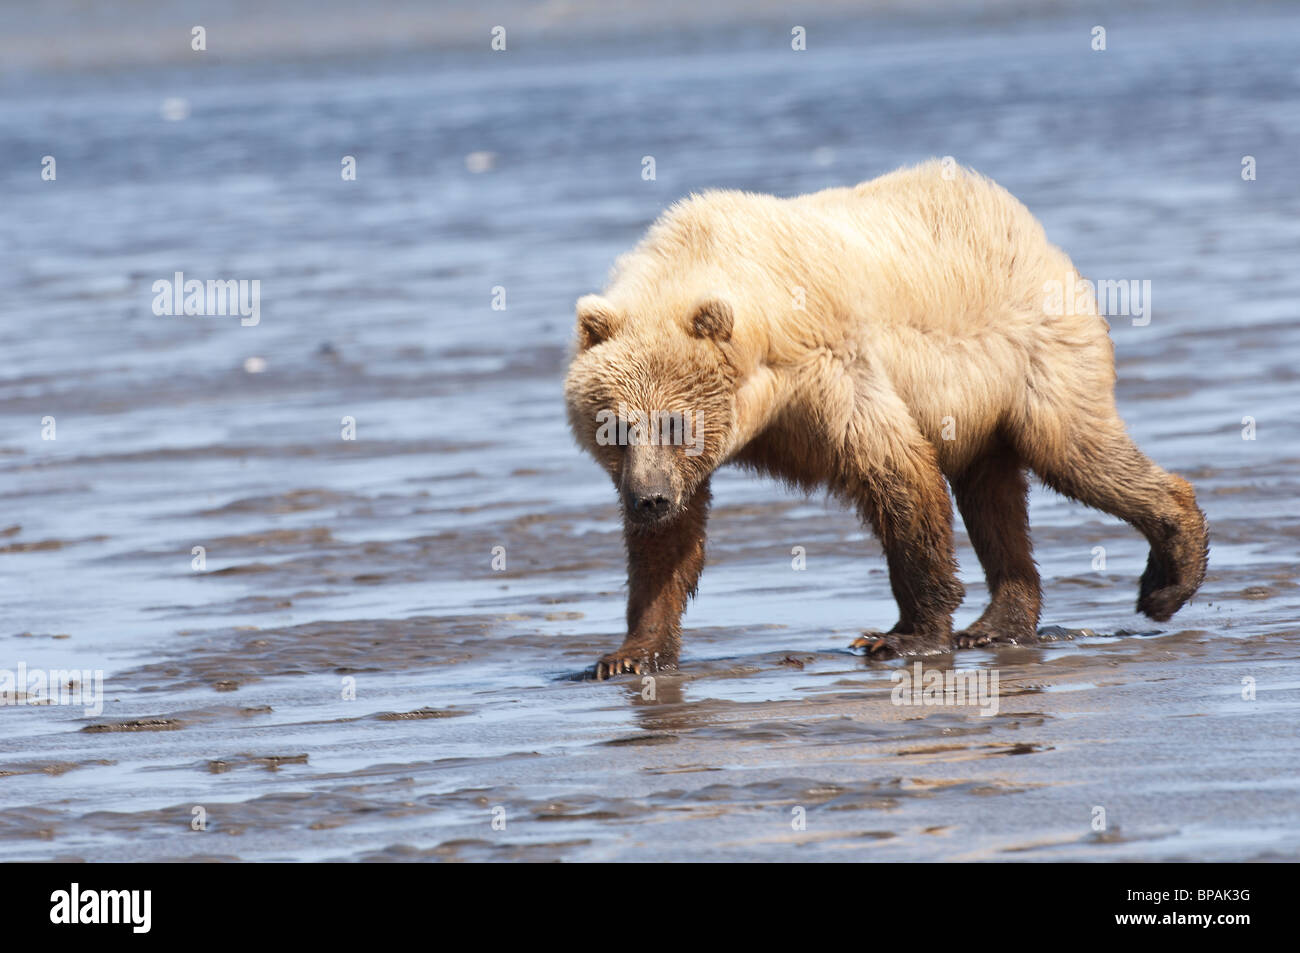 Foto di stock di una bionda-fase Alaskan orso bruno camminando attraverso le piane di marea a bassa marea. Foto Stock